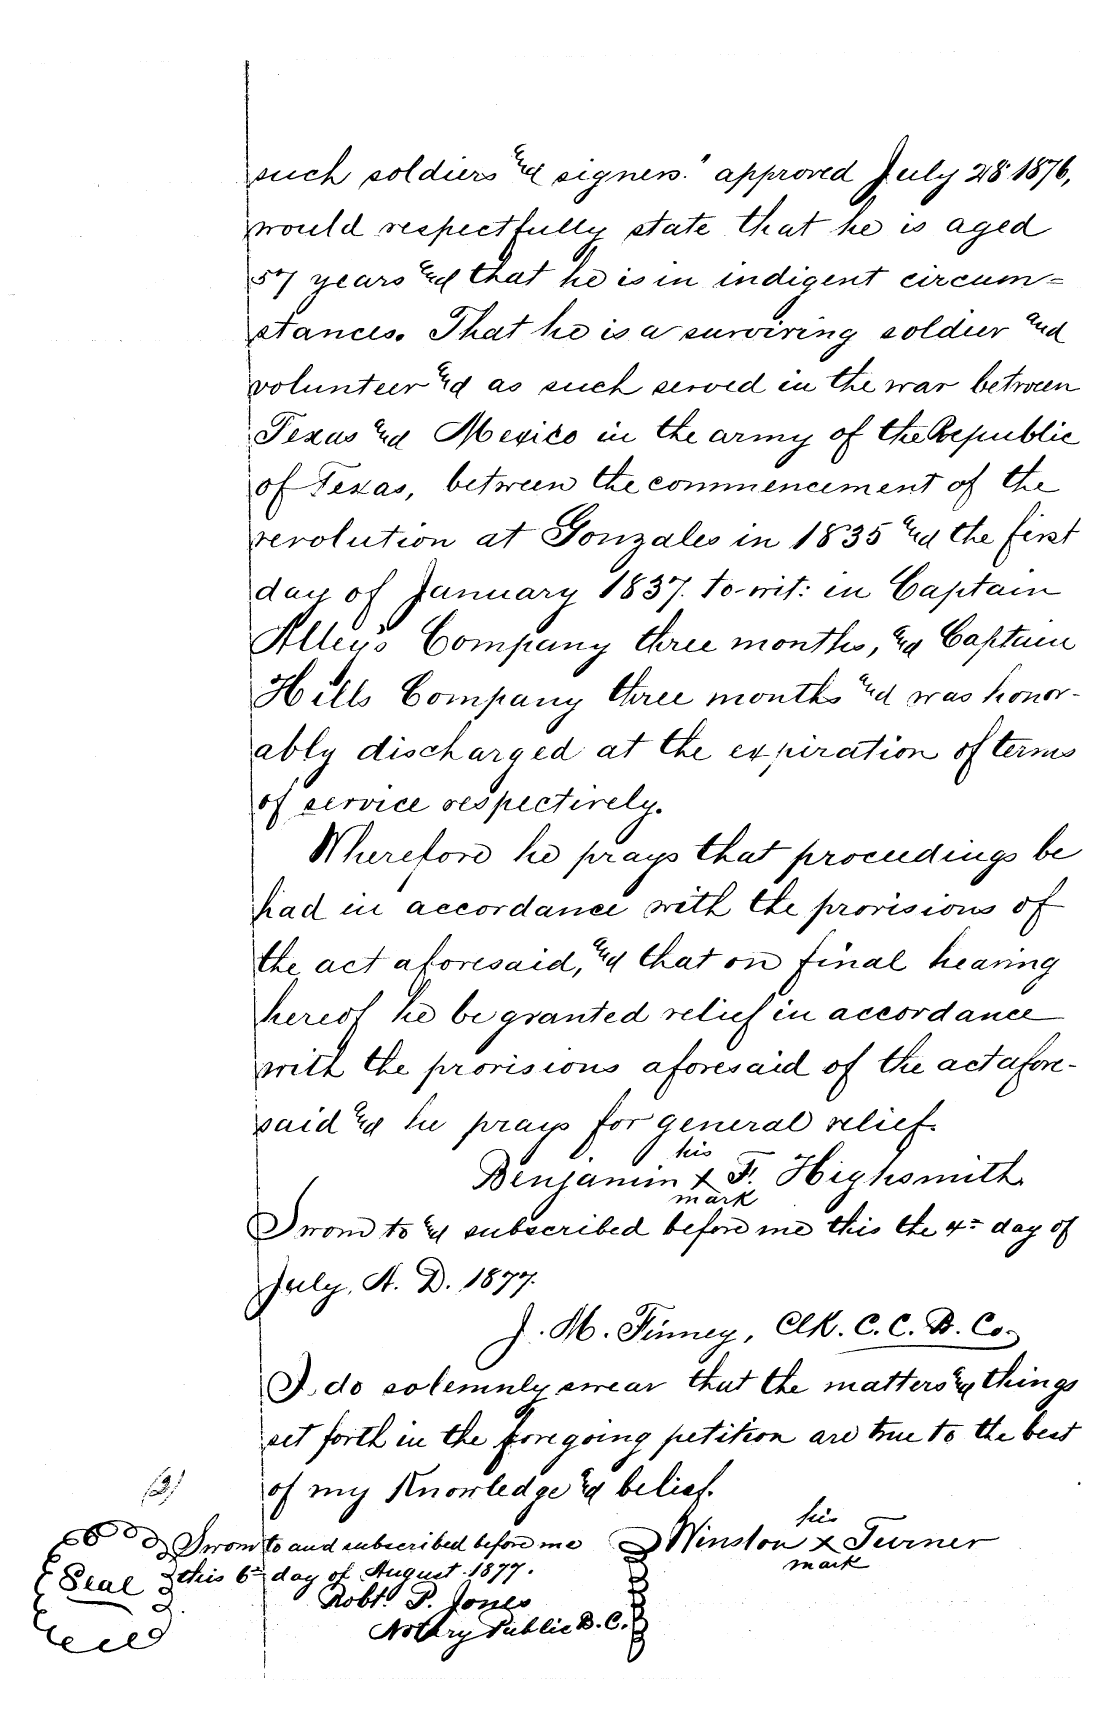 Sworn statement of Benjamin F. Highsmith that he was 57 in 1877